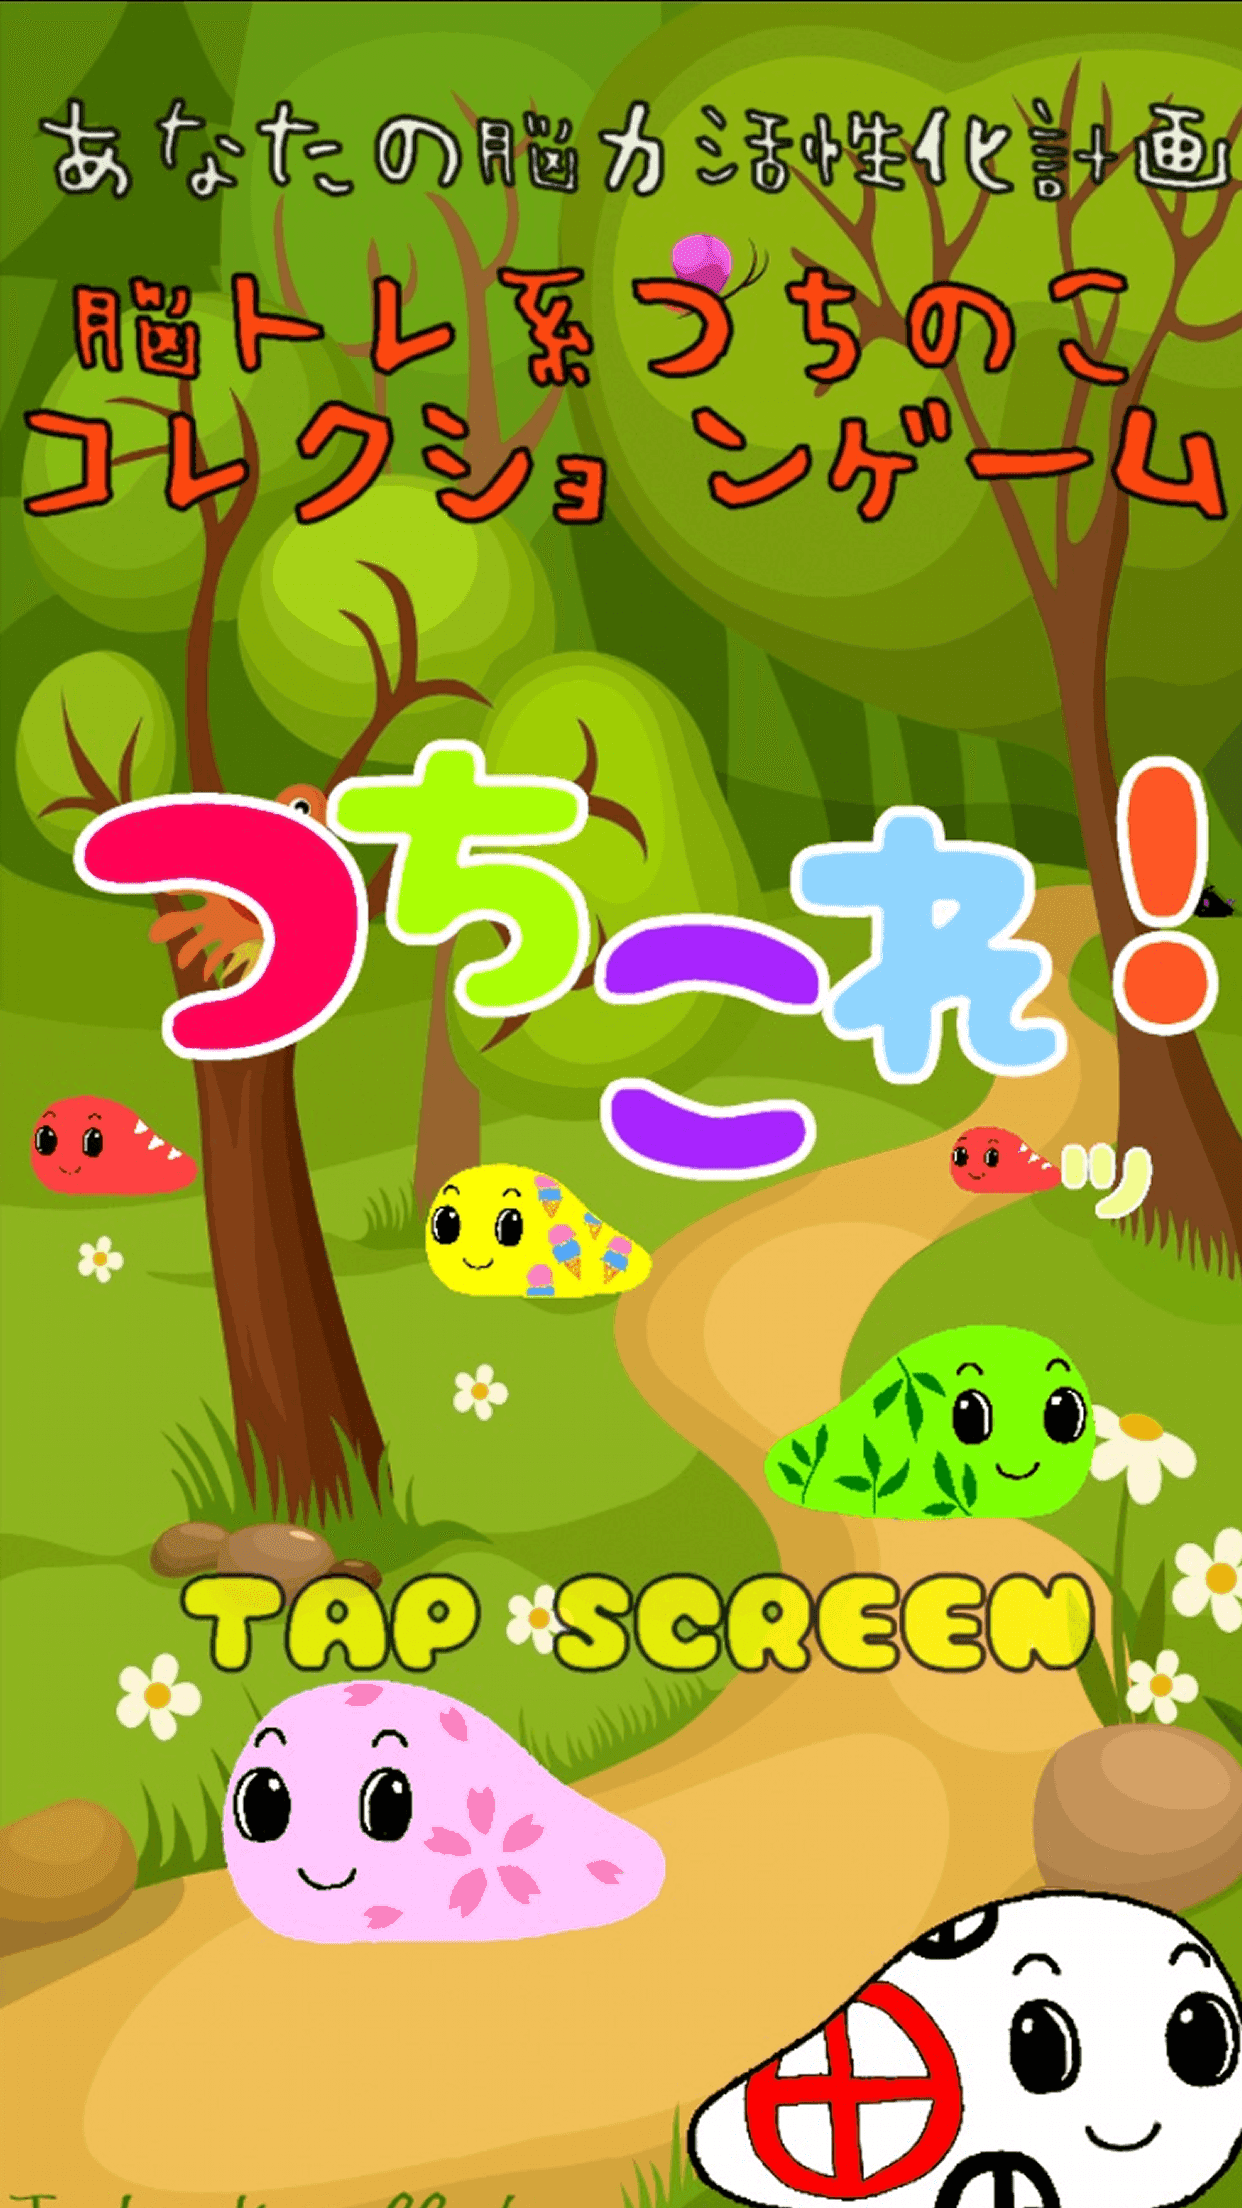 Screenshot 1 of 츠치노코 컬렉션 뇌 트레이닝 게임 【츠치코! 】 1.0